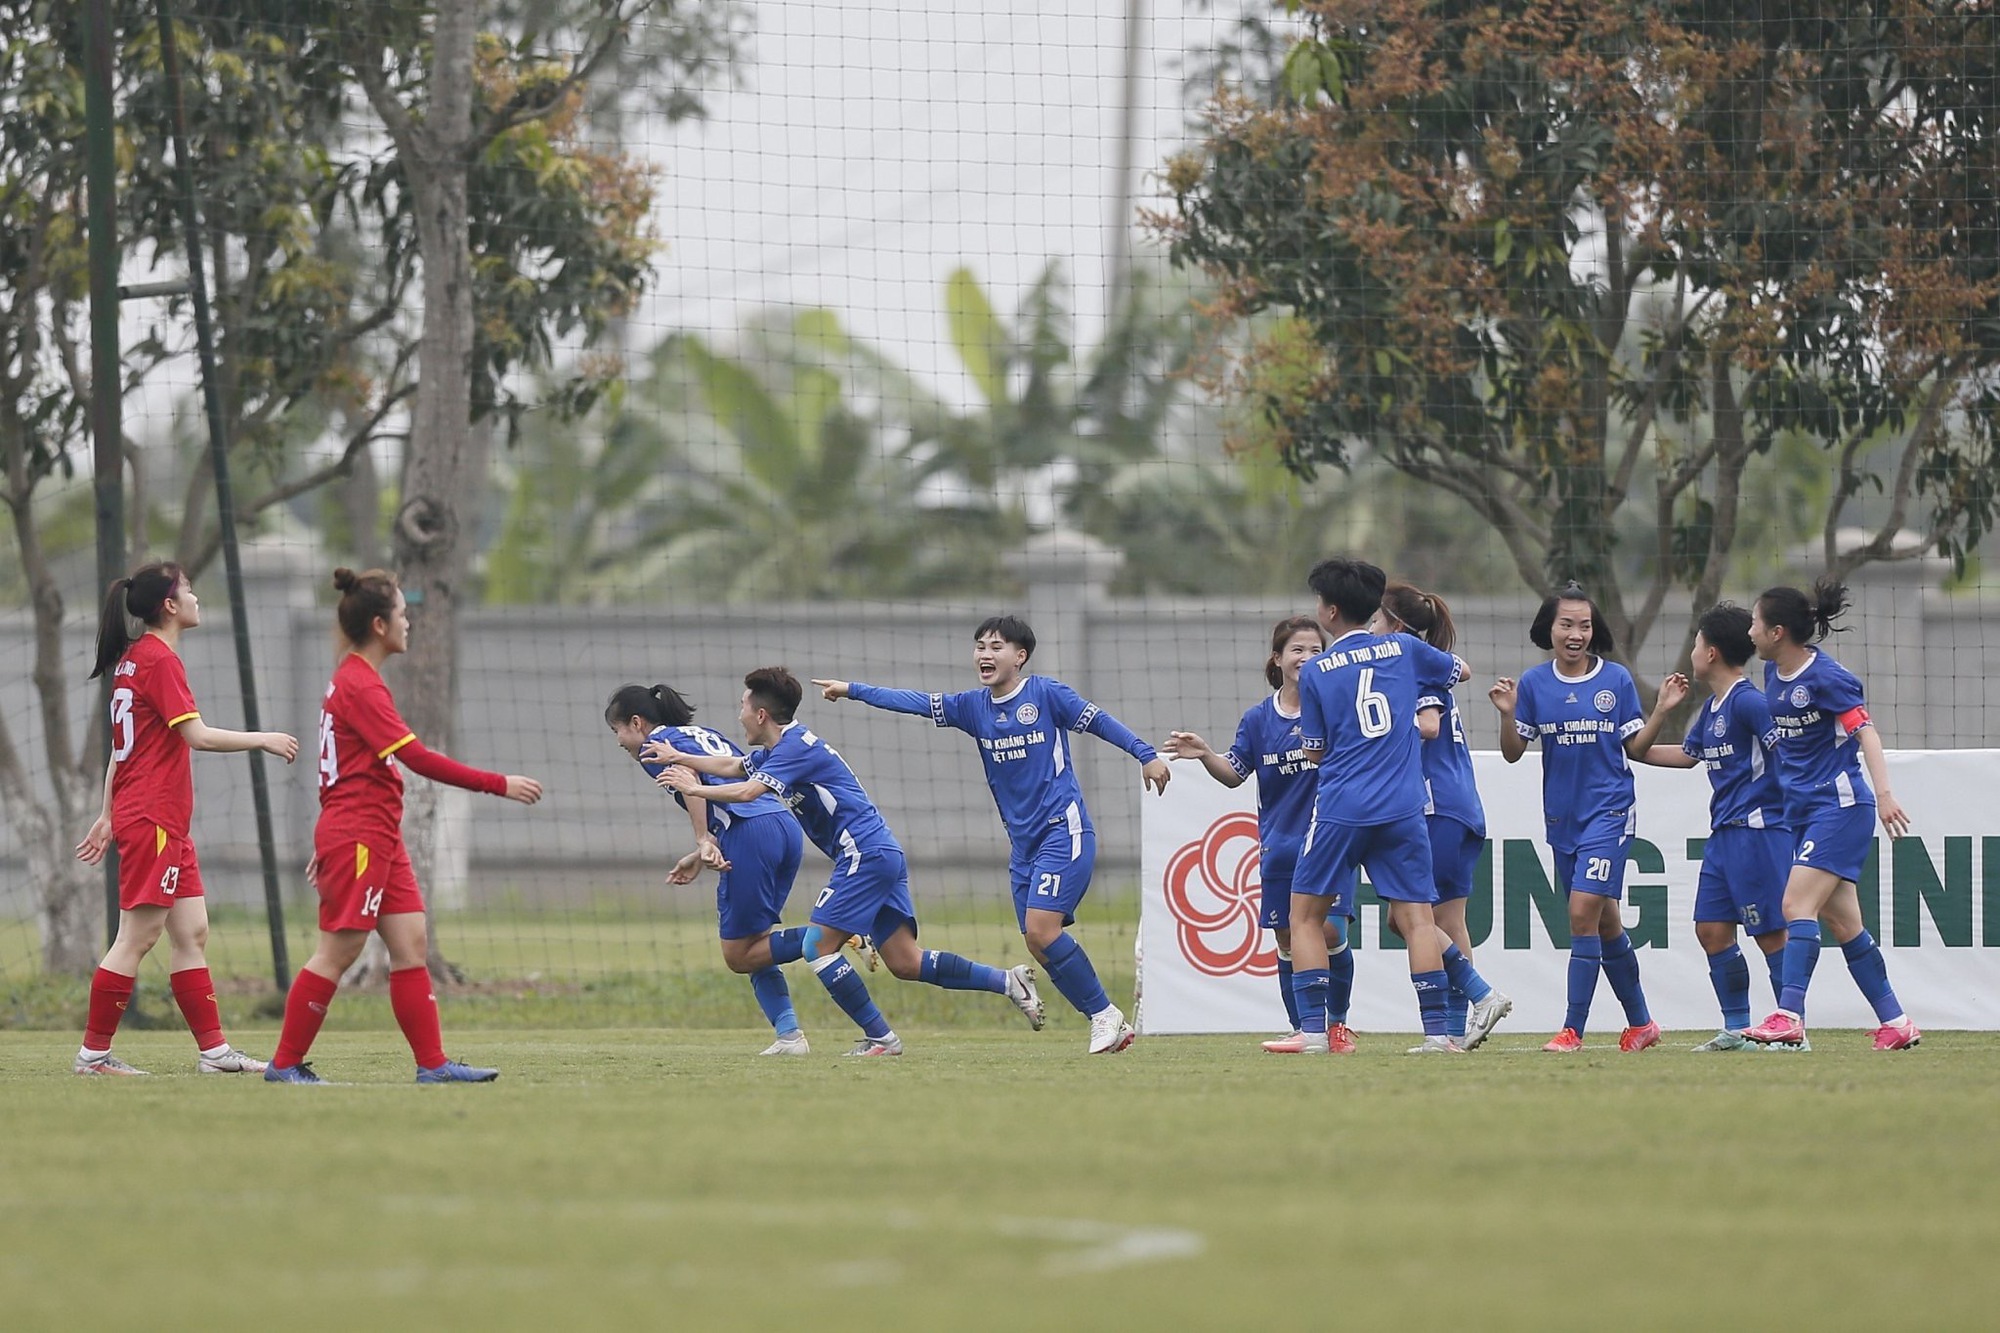 CLB bóng đá nữ Than khoáng sản Việt Nam lần đầu đoạt cúp quốc gia  - Ảnh 1.